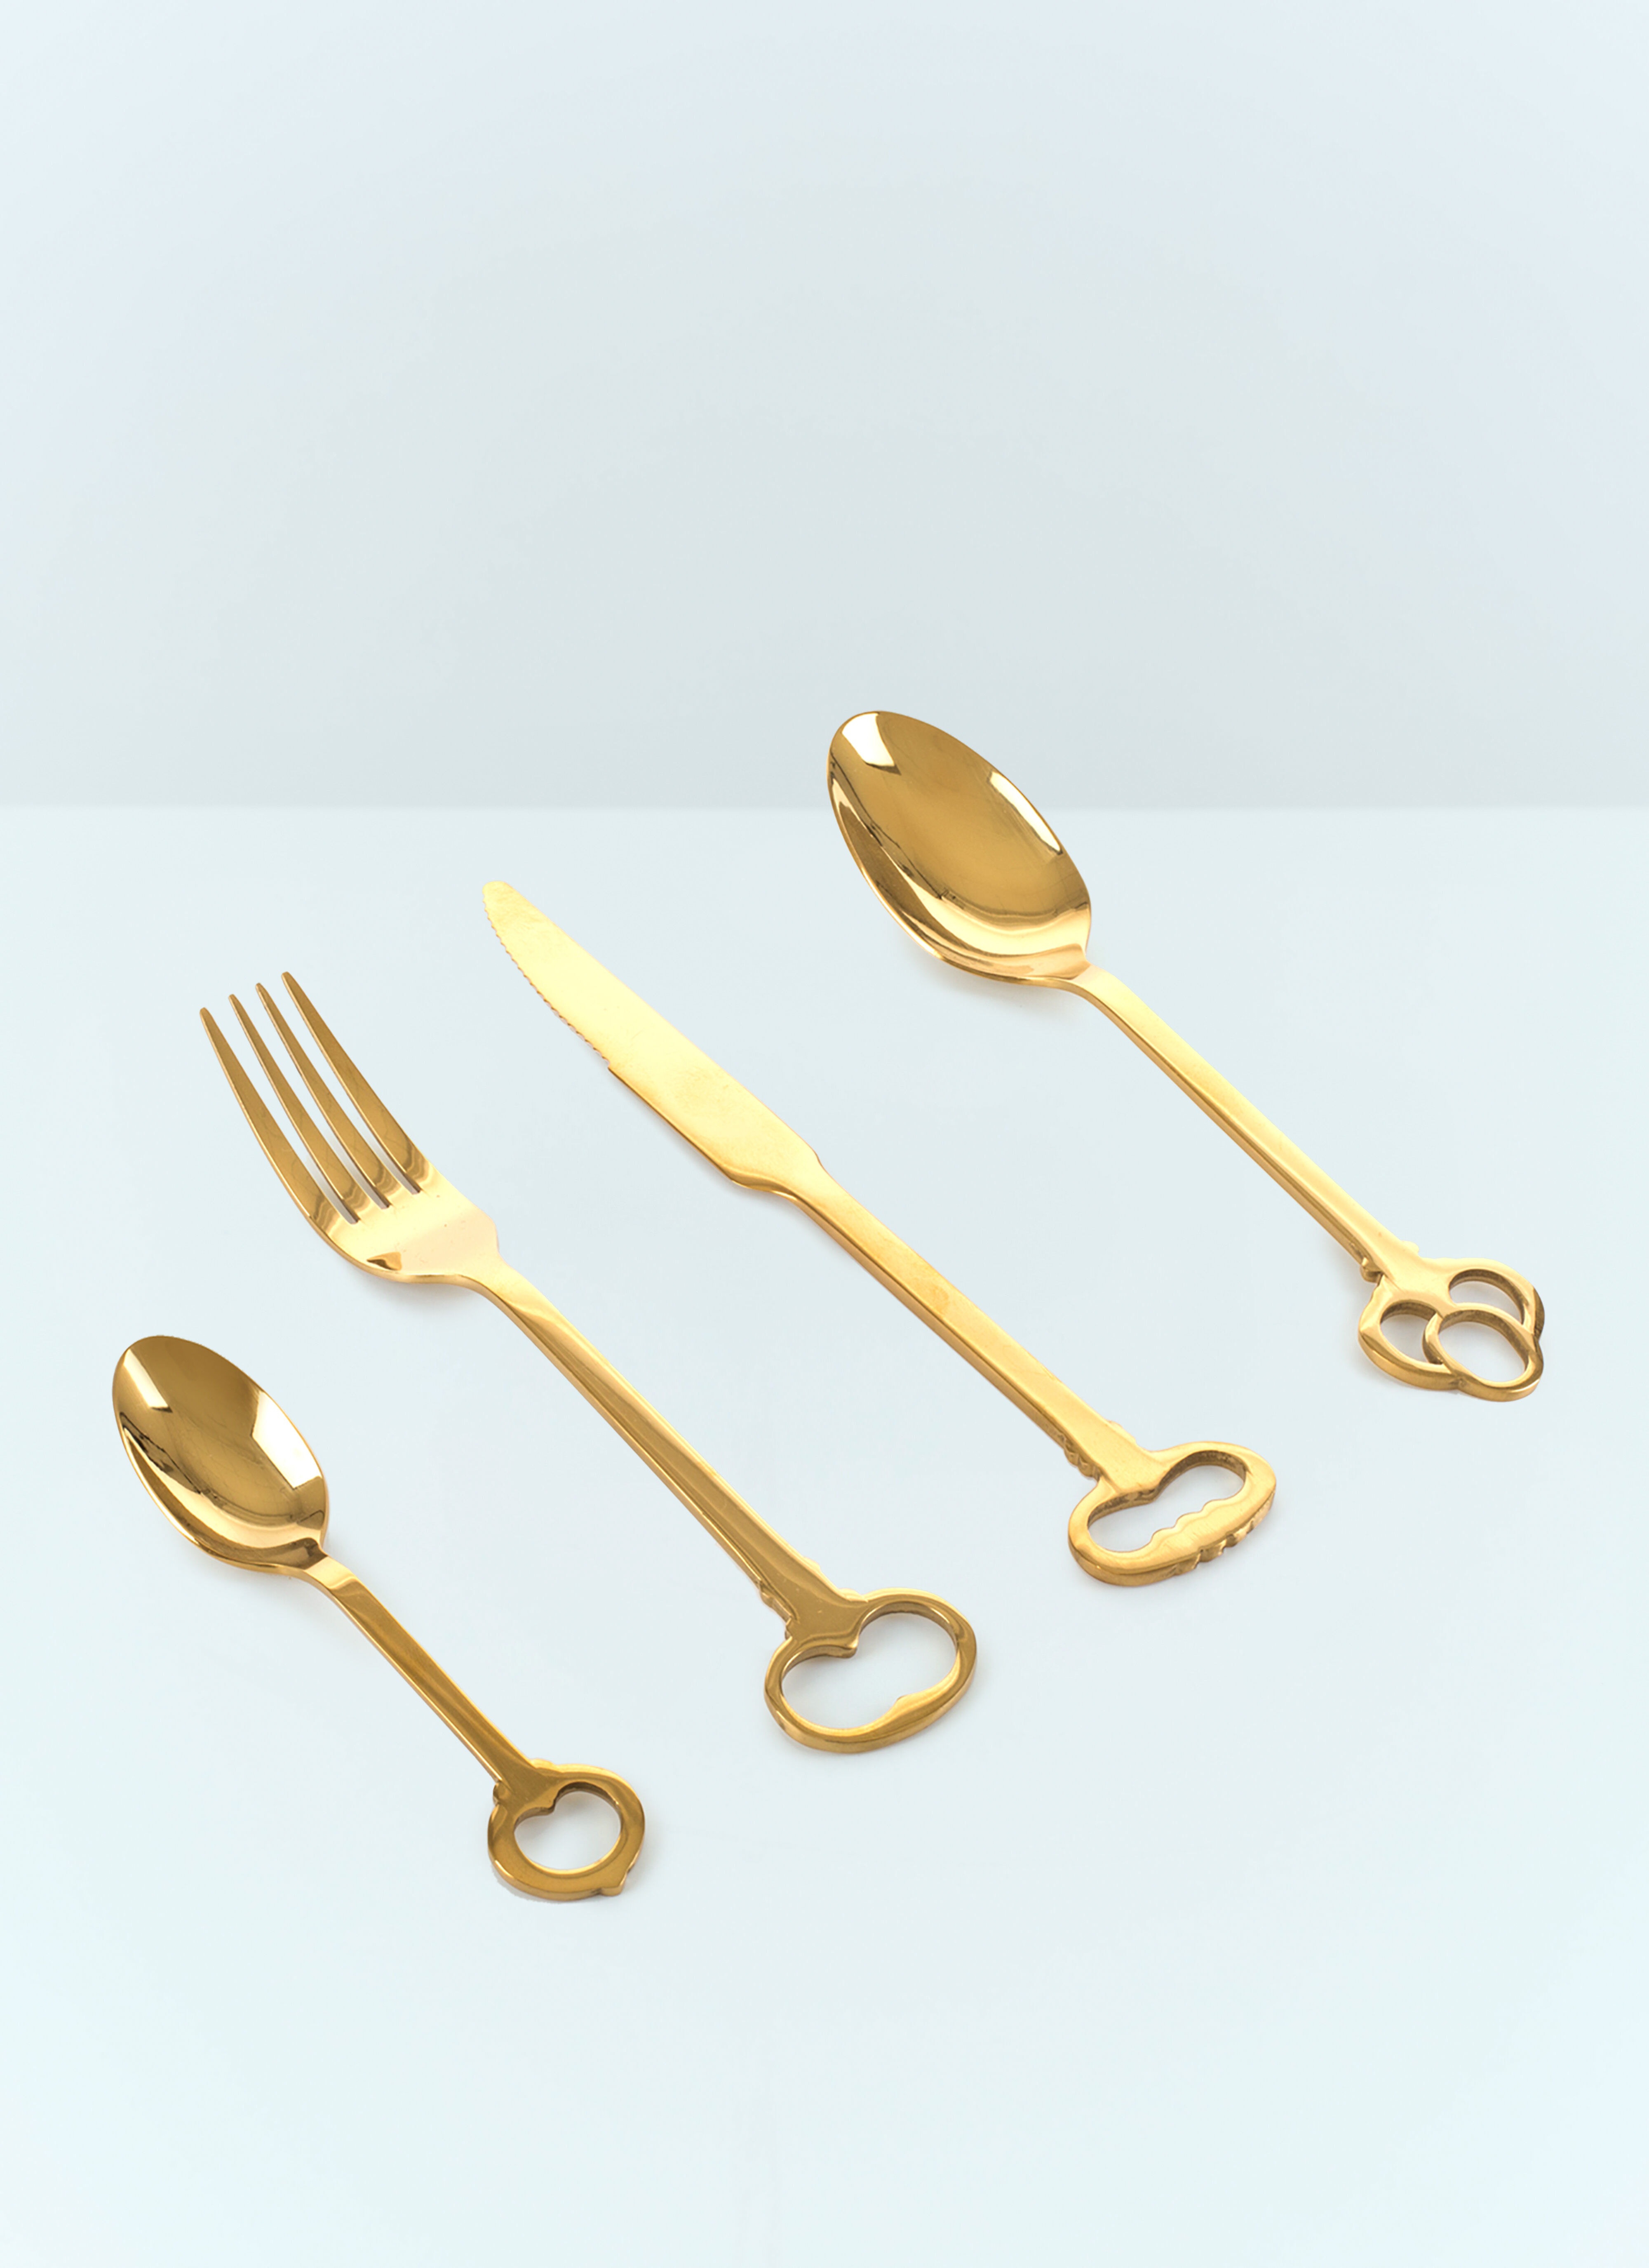 Les Ottomans Keytlery Cutlery Set Clear wps0691229